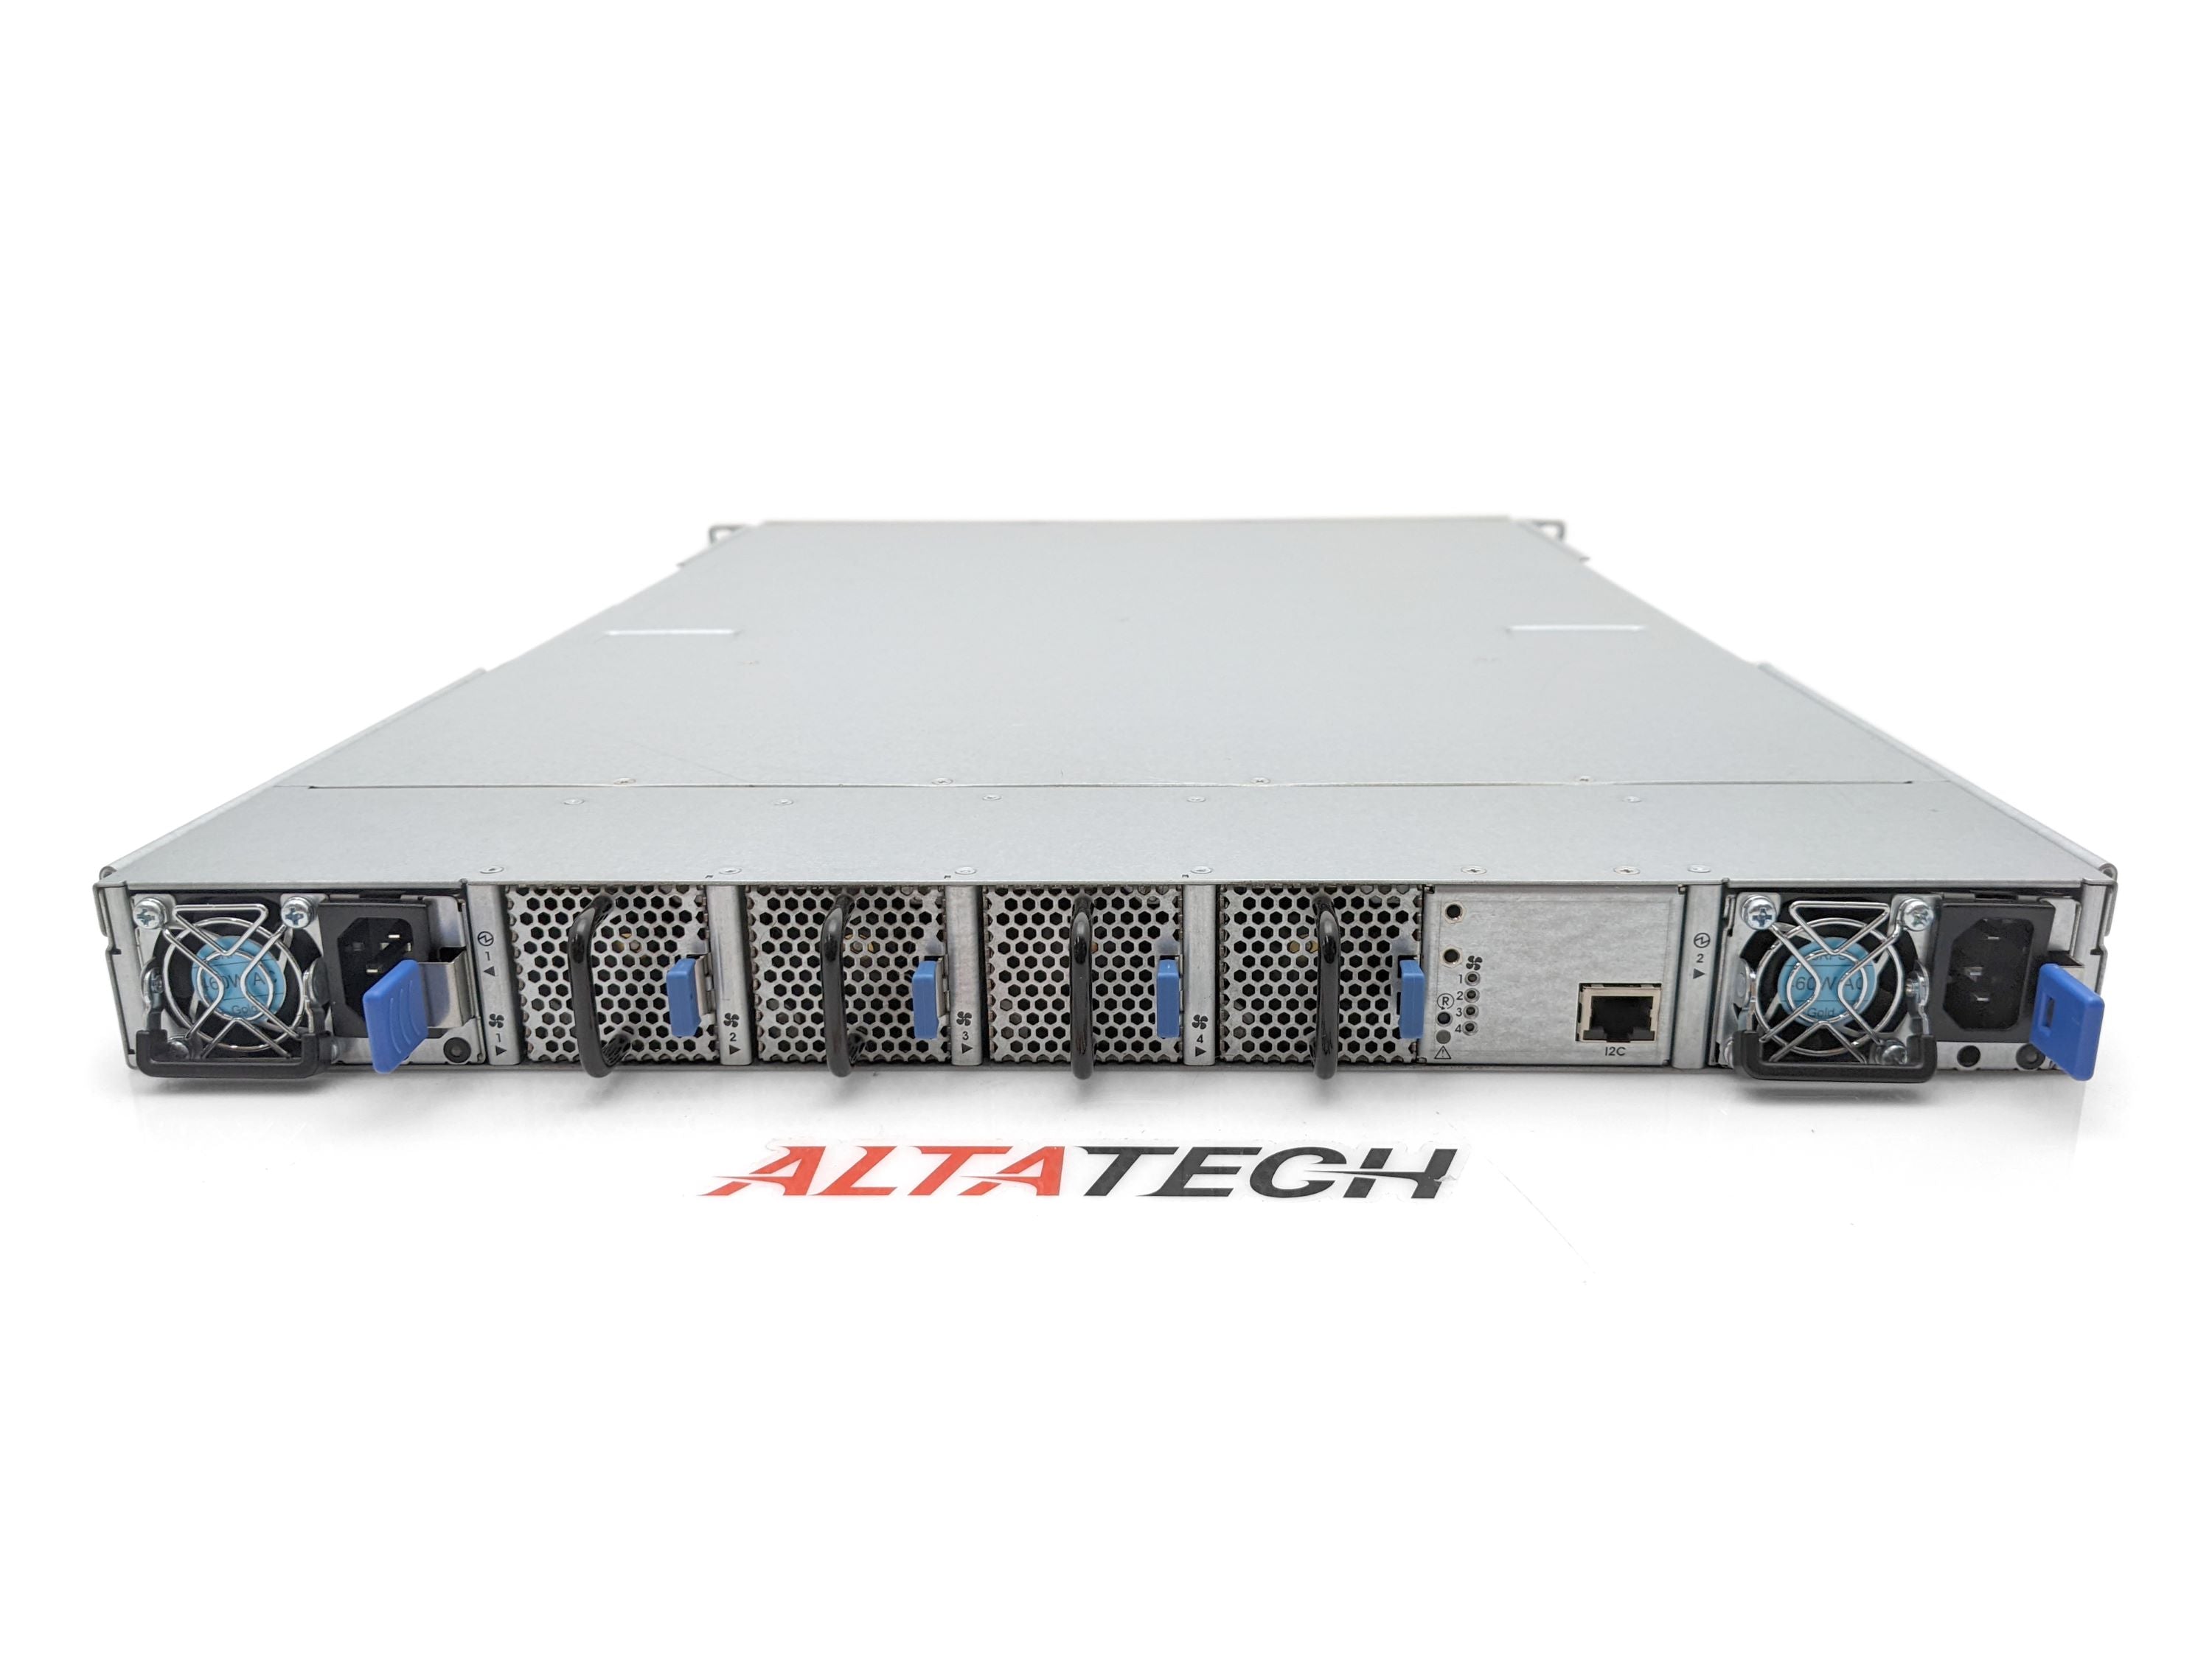 NVIDIA MSB7790-ES2F Mellanox Switch-IB SB7790 36x QSFP28 100Gbps Smart